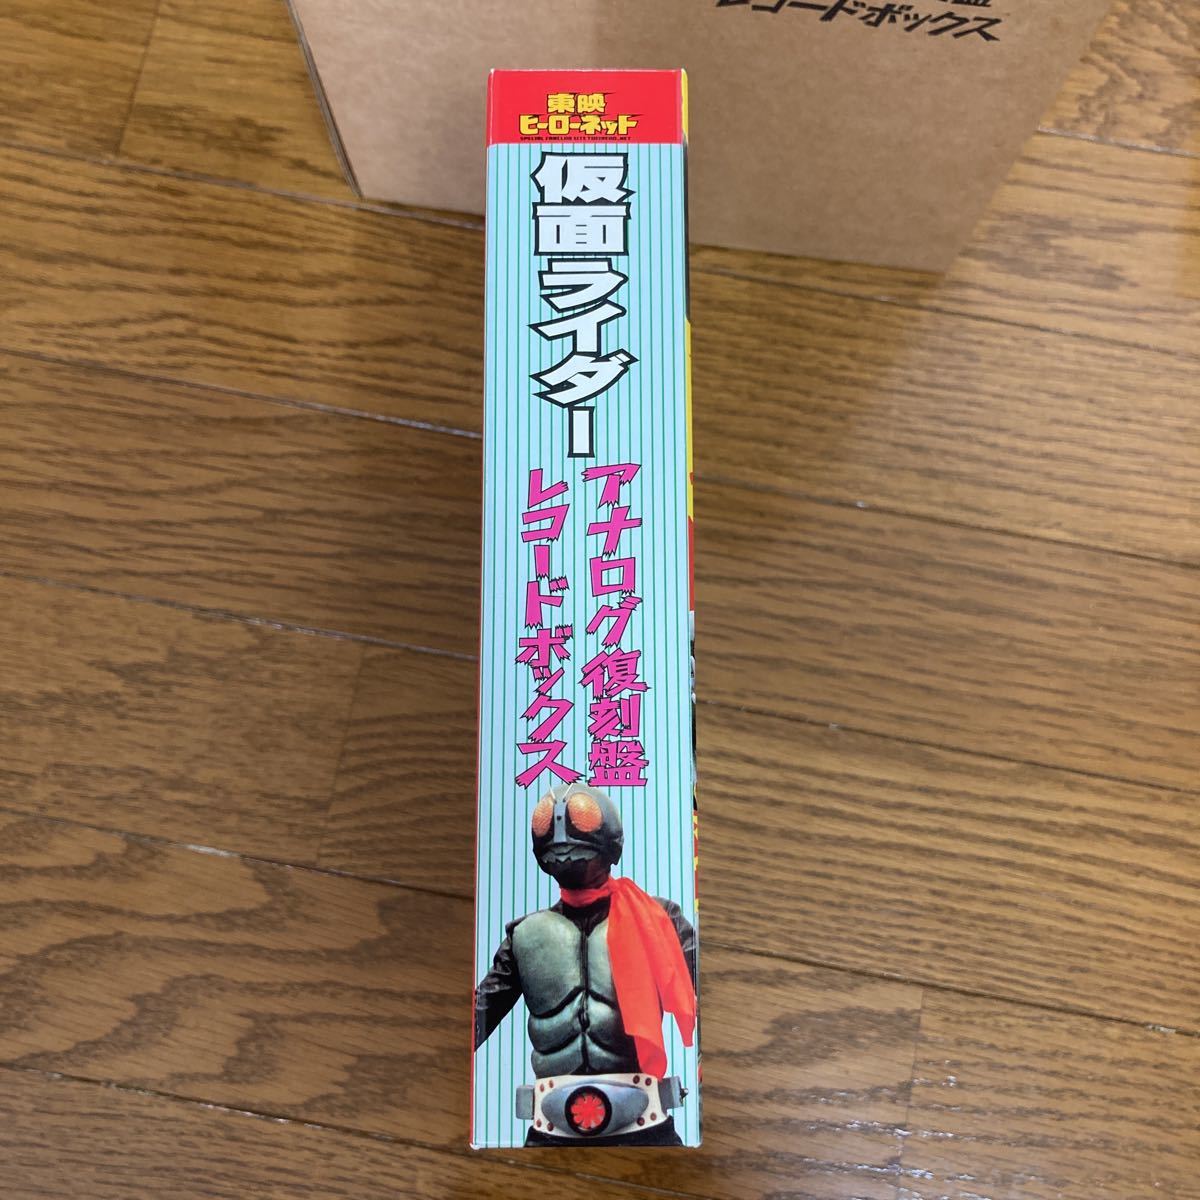 仮面ライダー アナログ復刻盤 レコードボックス 東映ヒーローネット 